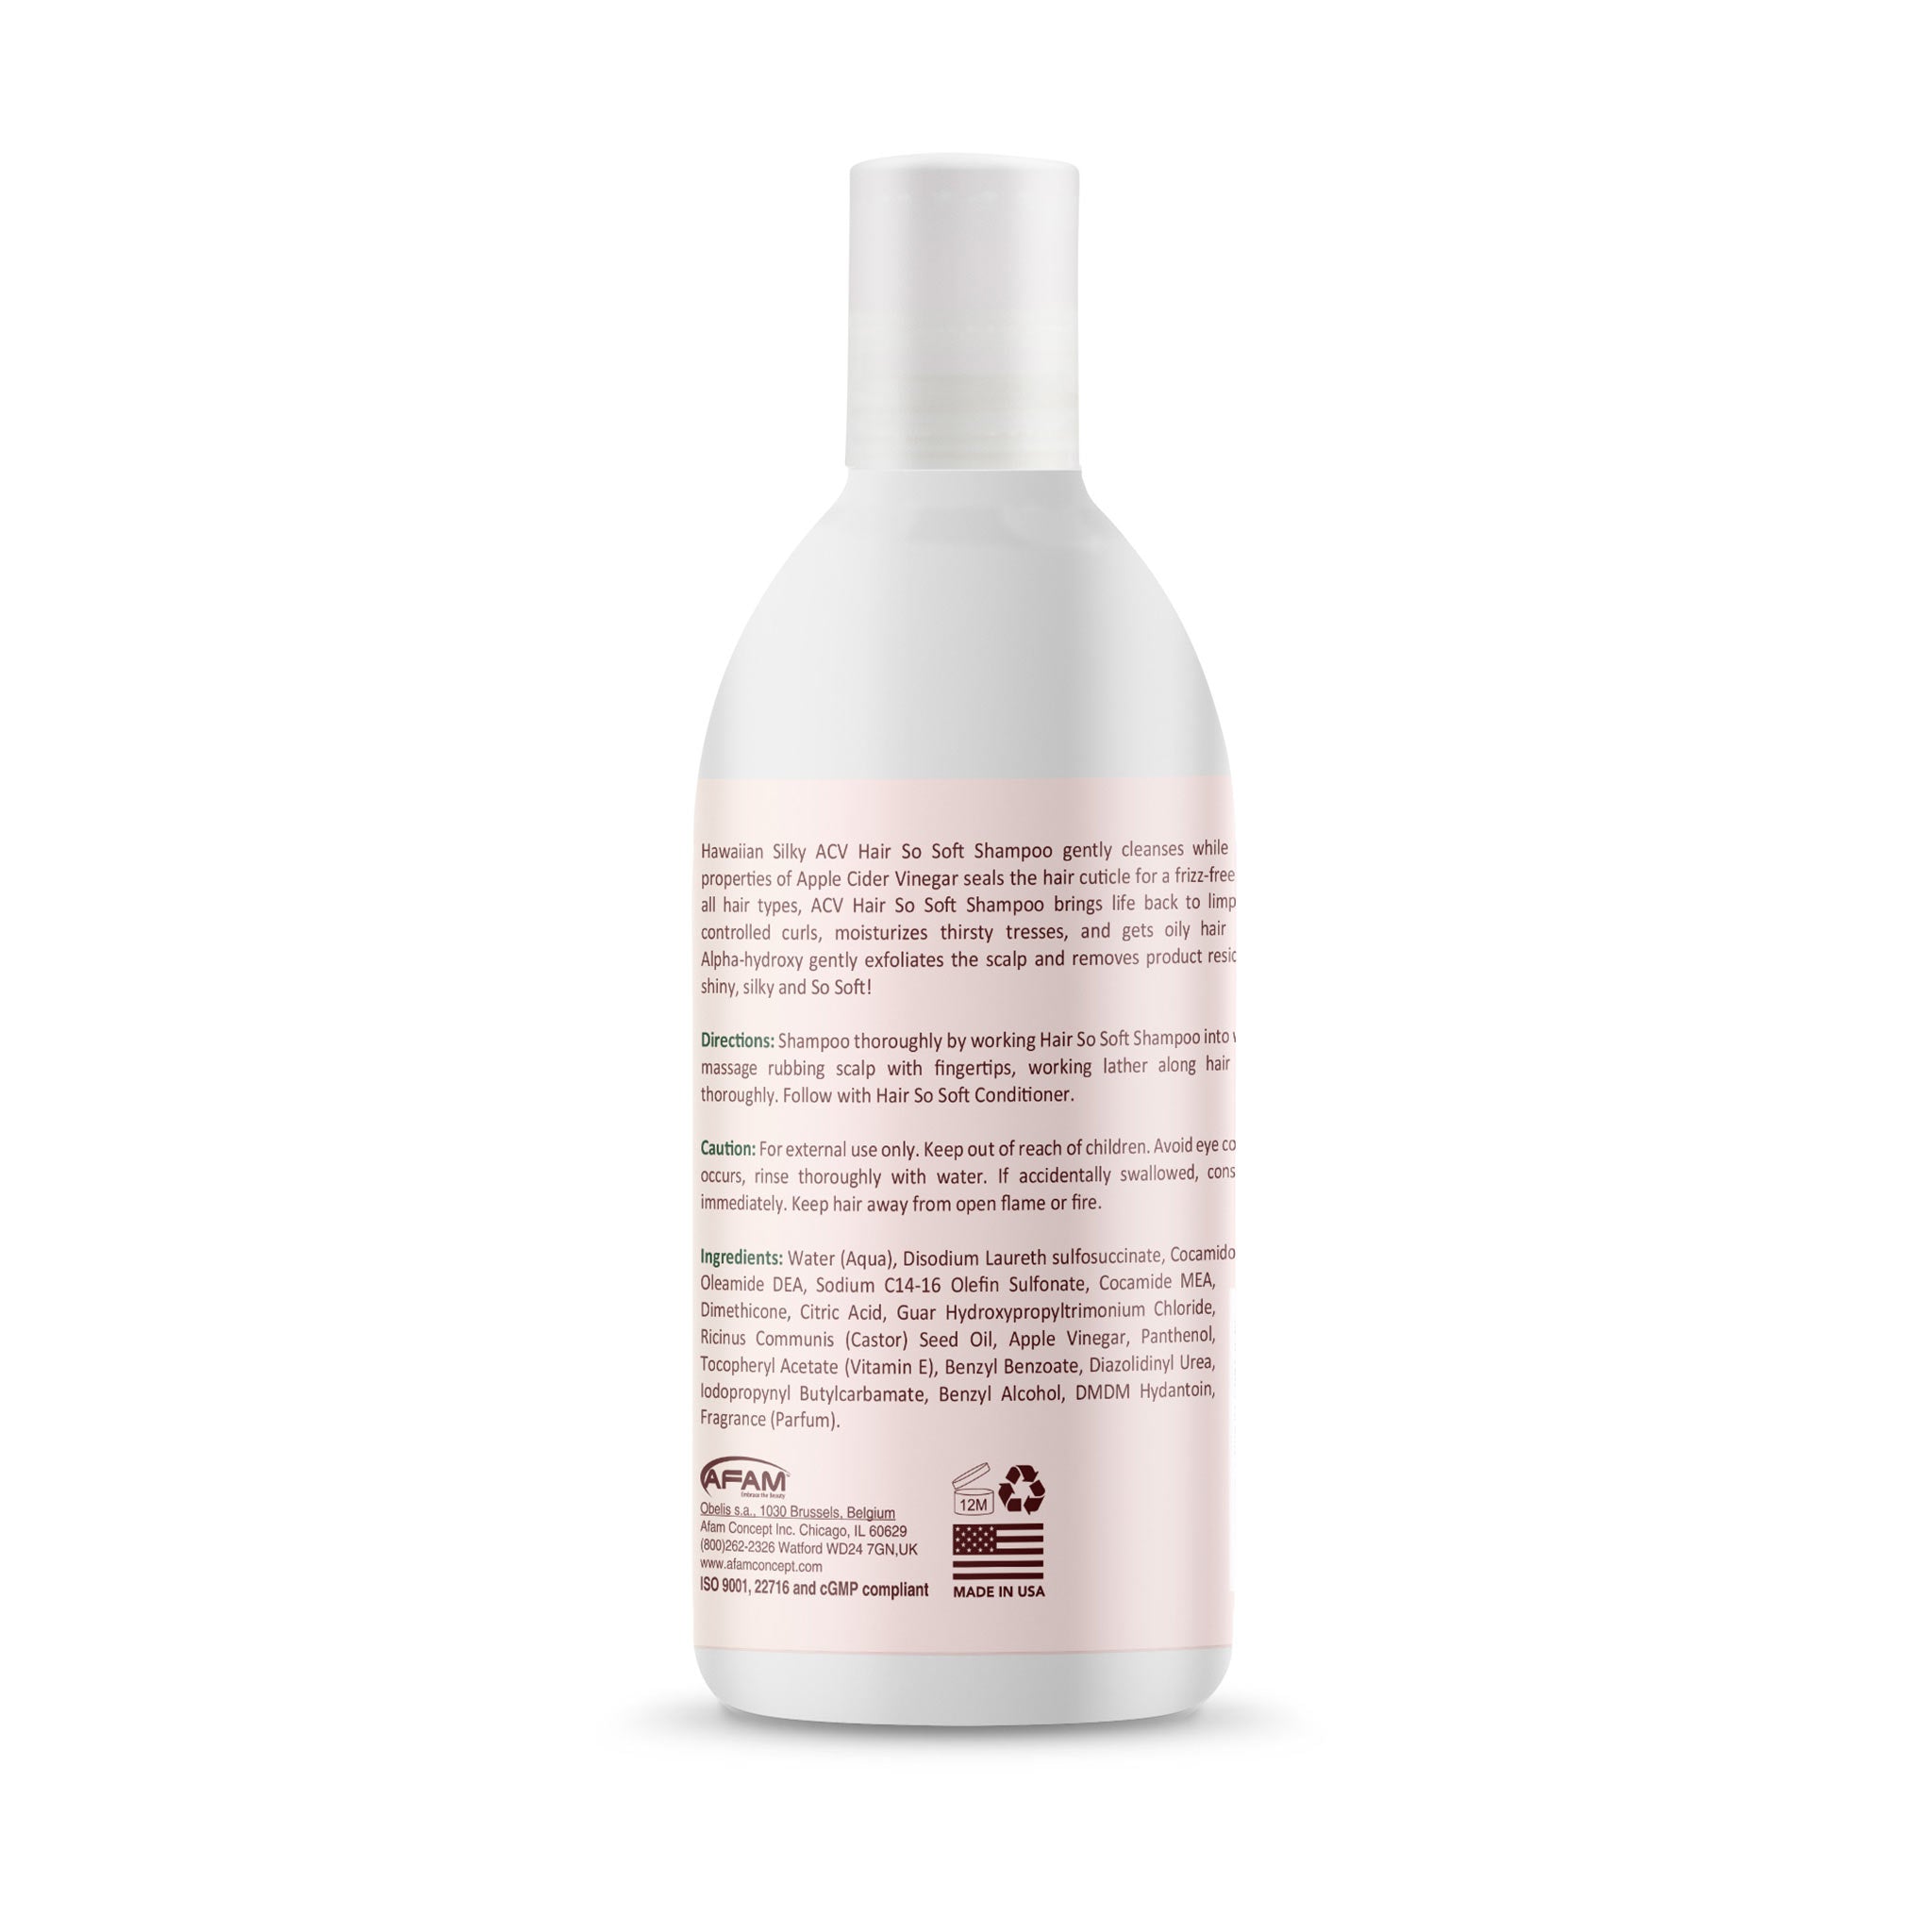 Hawaiian Silky Hair So Soft Apple Cider Vinegar Clarifying Shampoo - Afam Concept Inc.